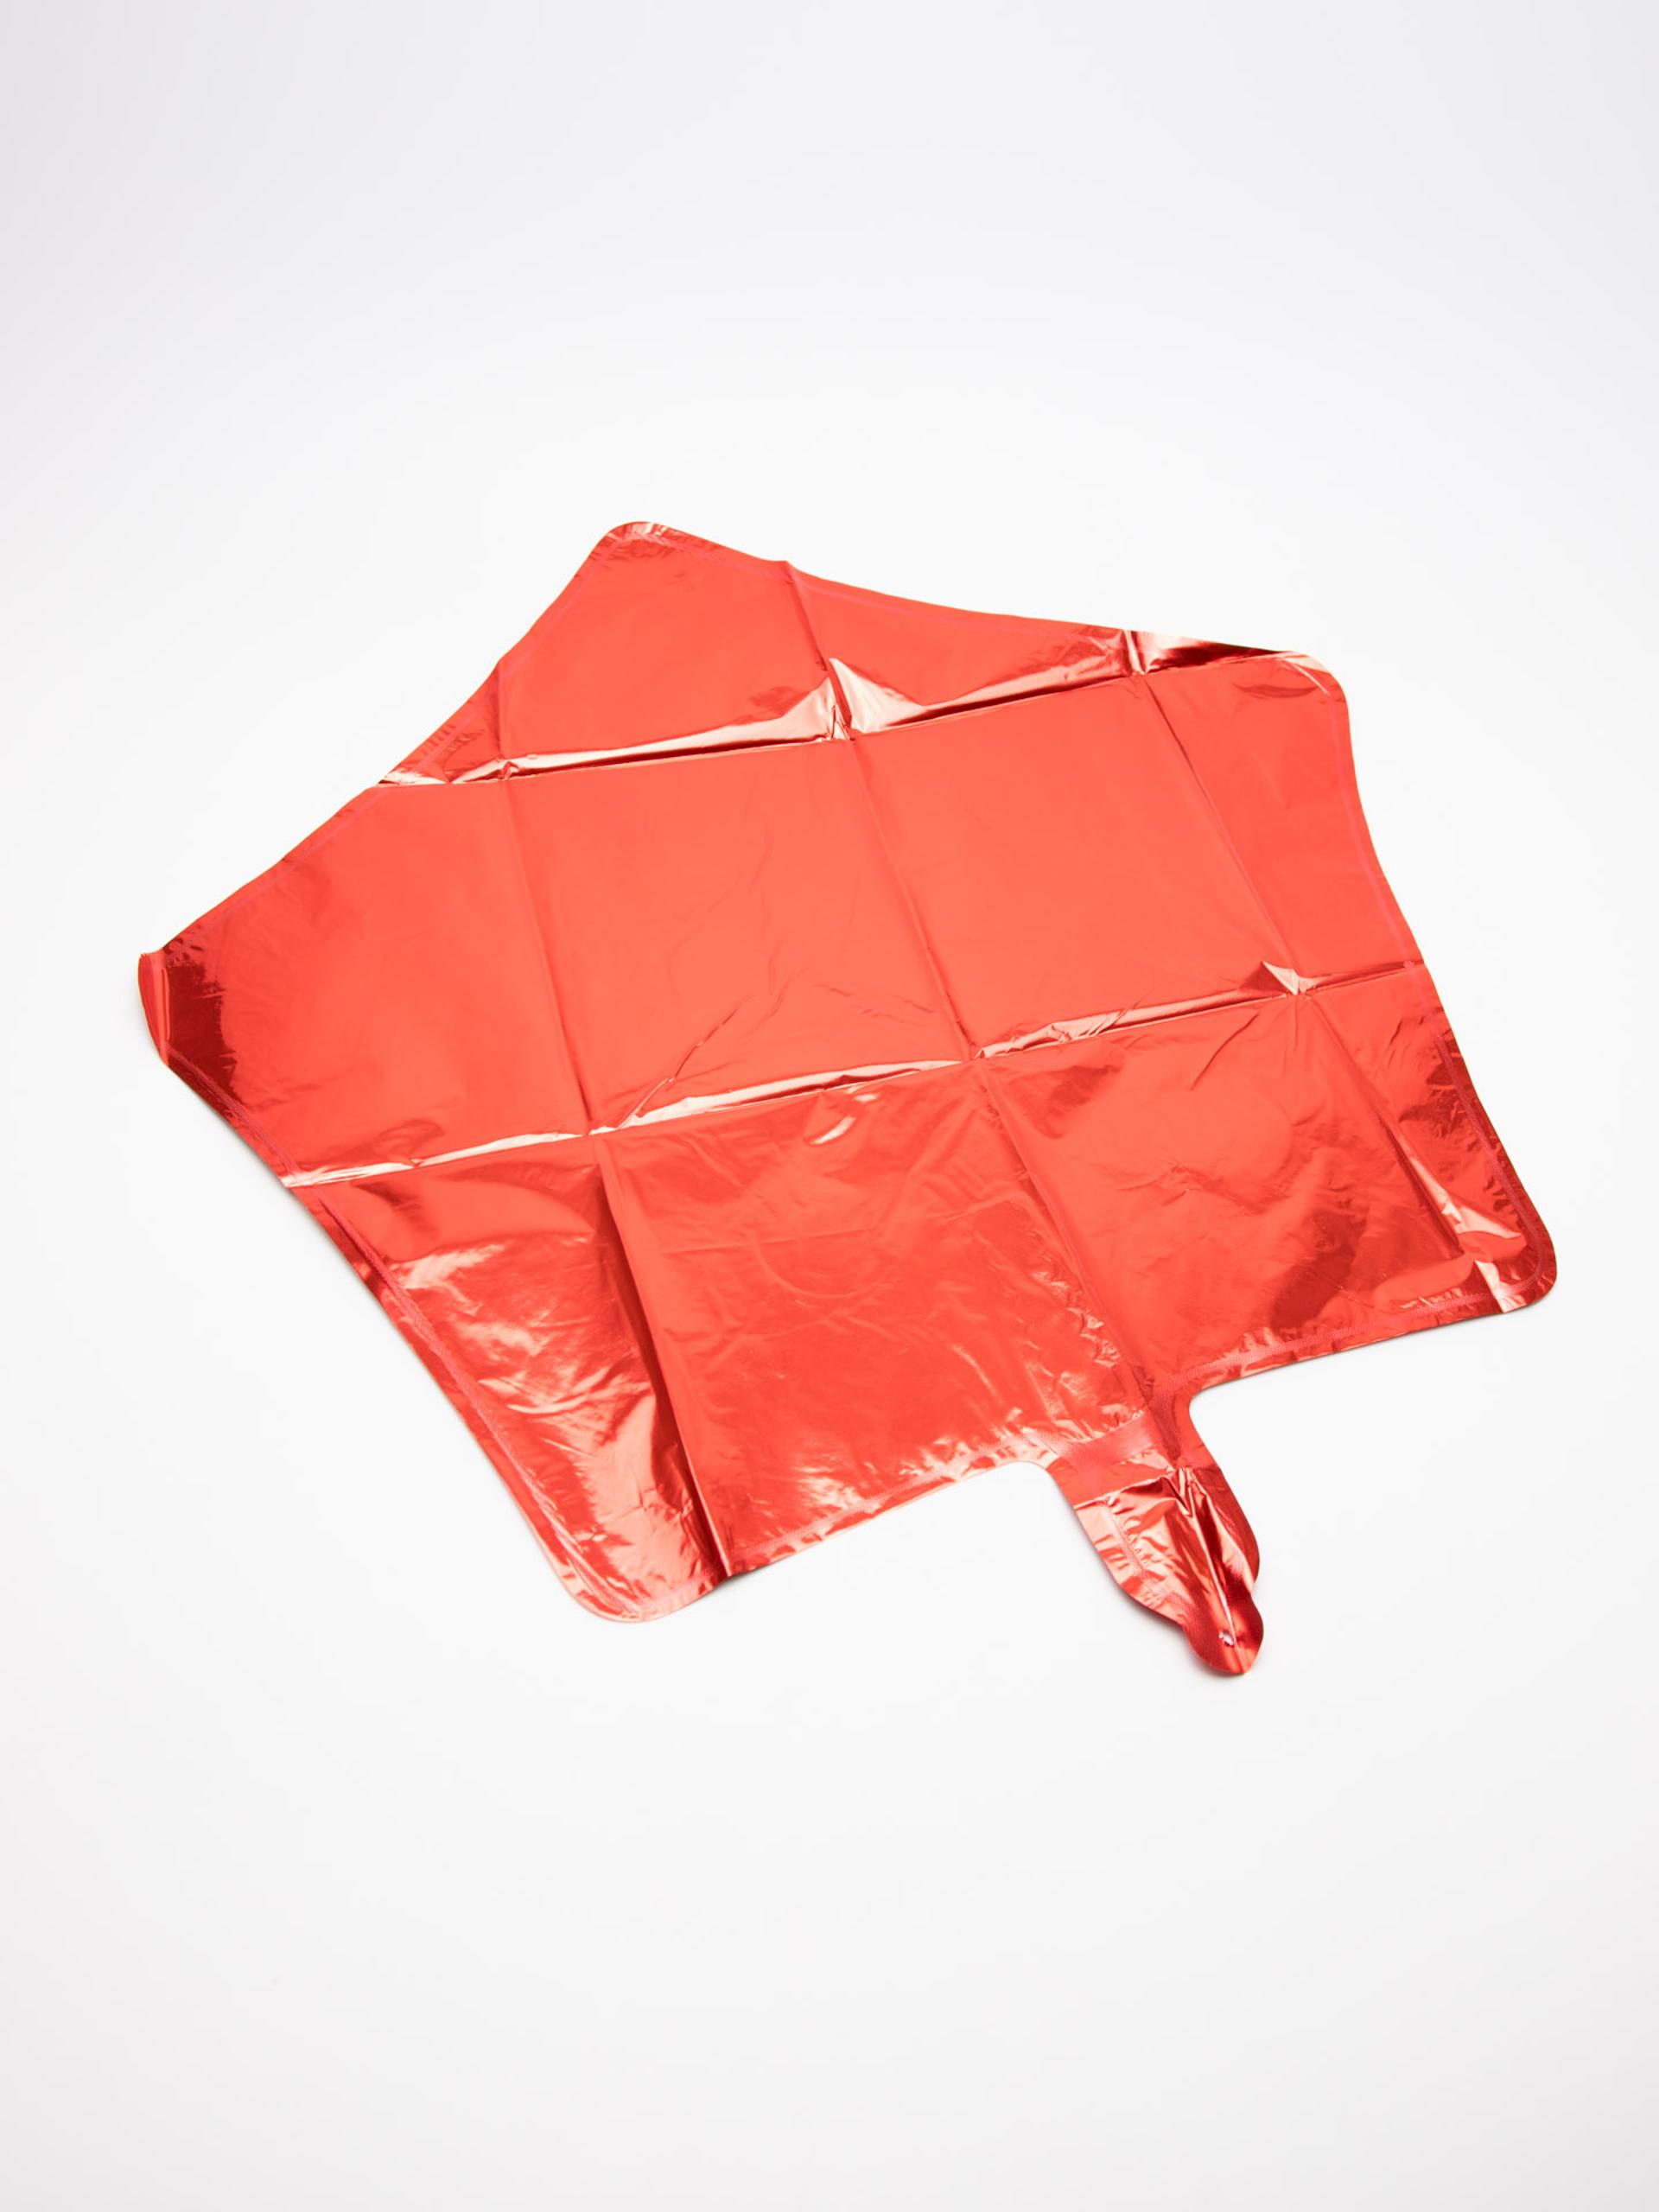 Товар - “Воздушный шар для детей Cocomelon  5шт”